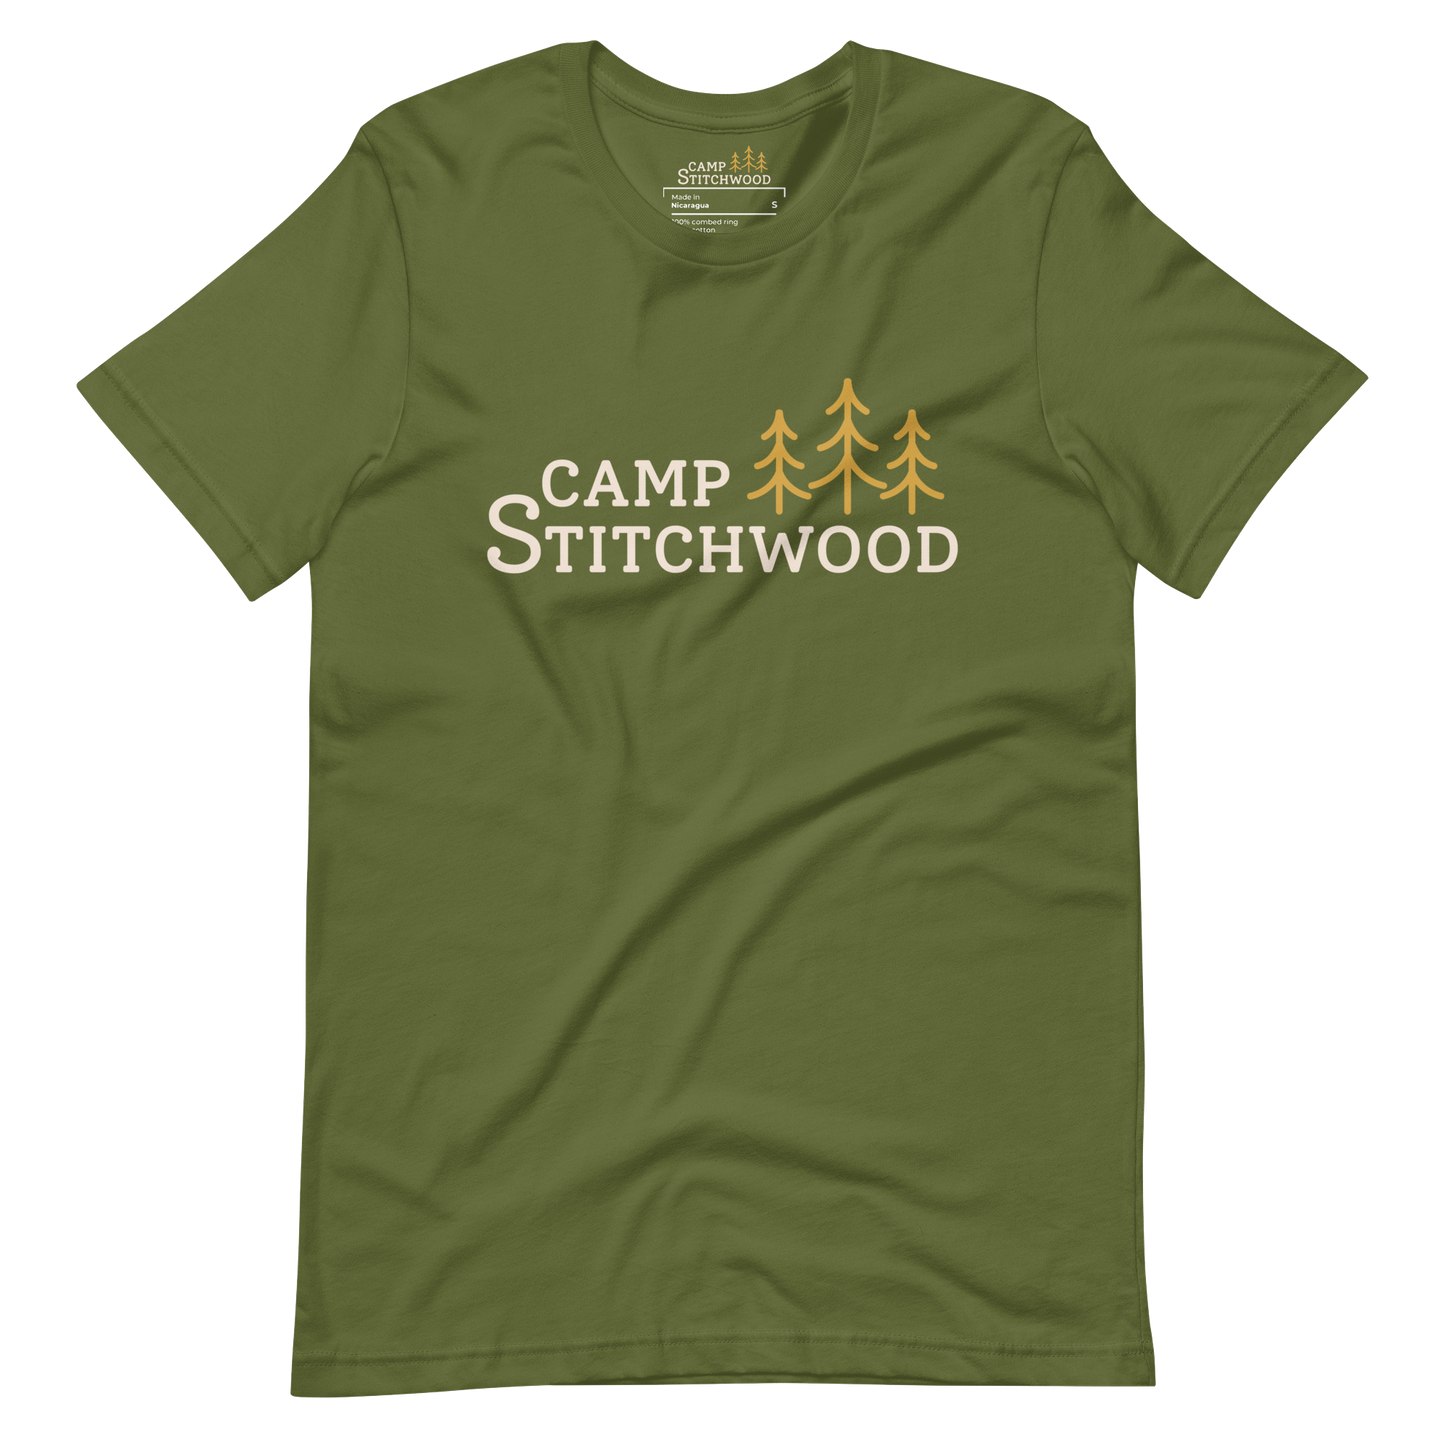 Camp Stitchwood T-Shirt, Unisex Short Sleeve